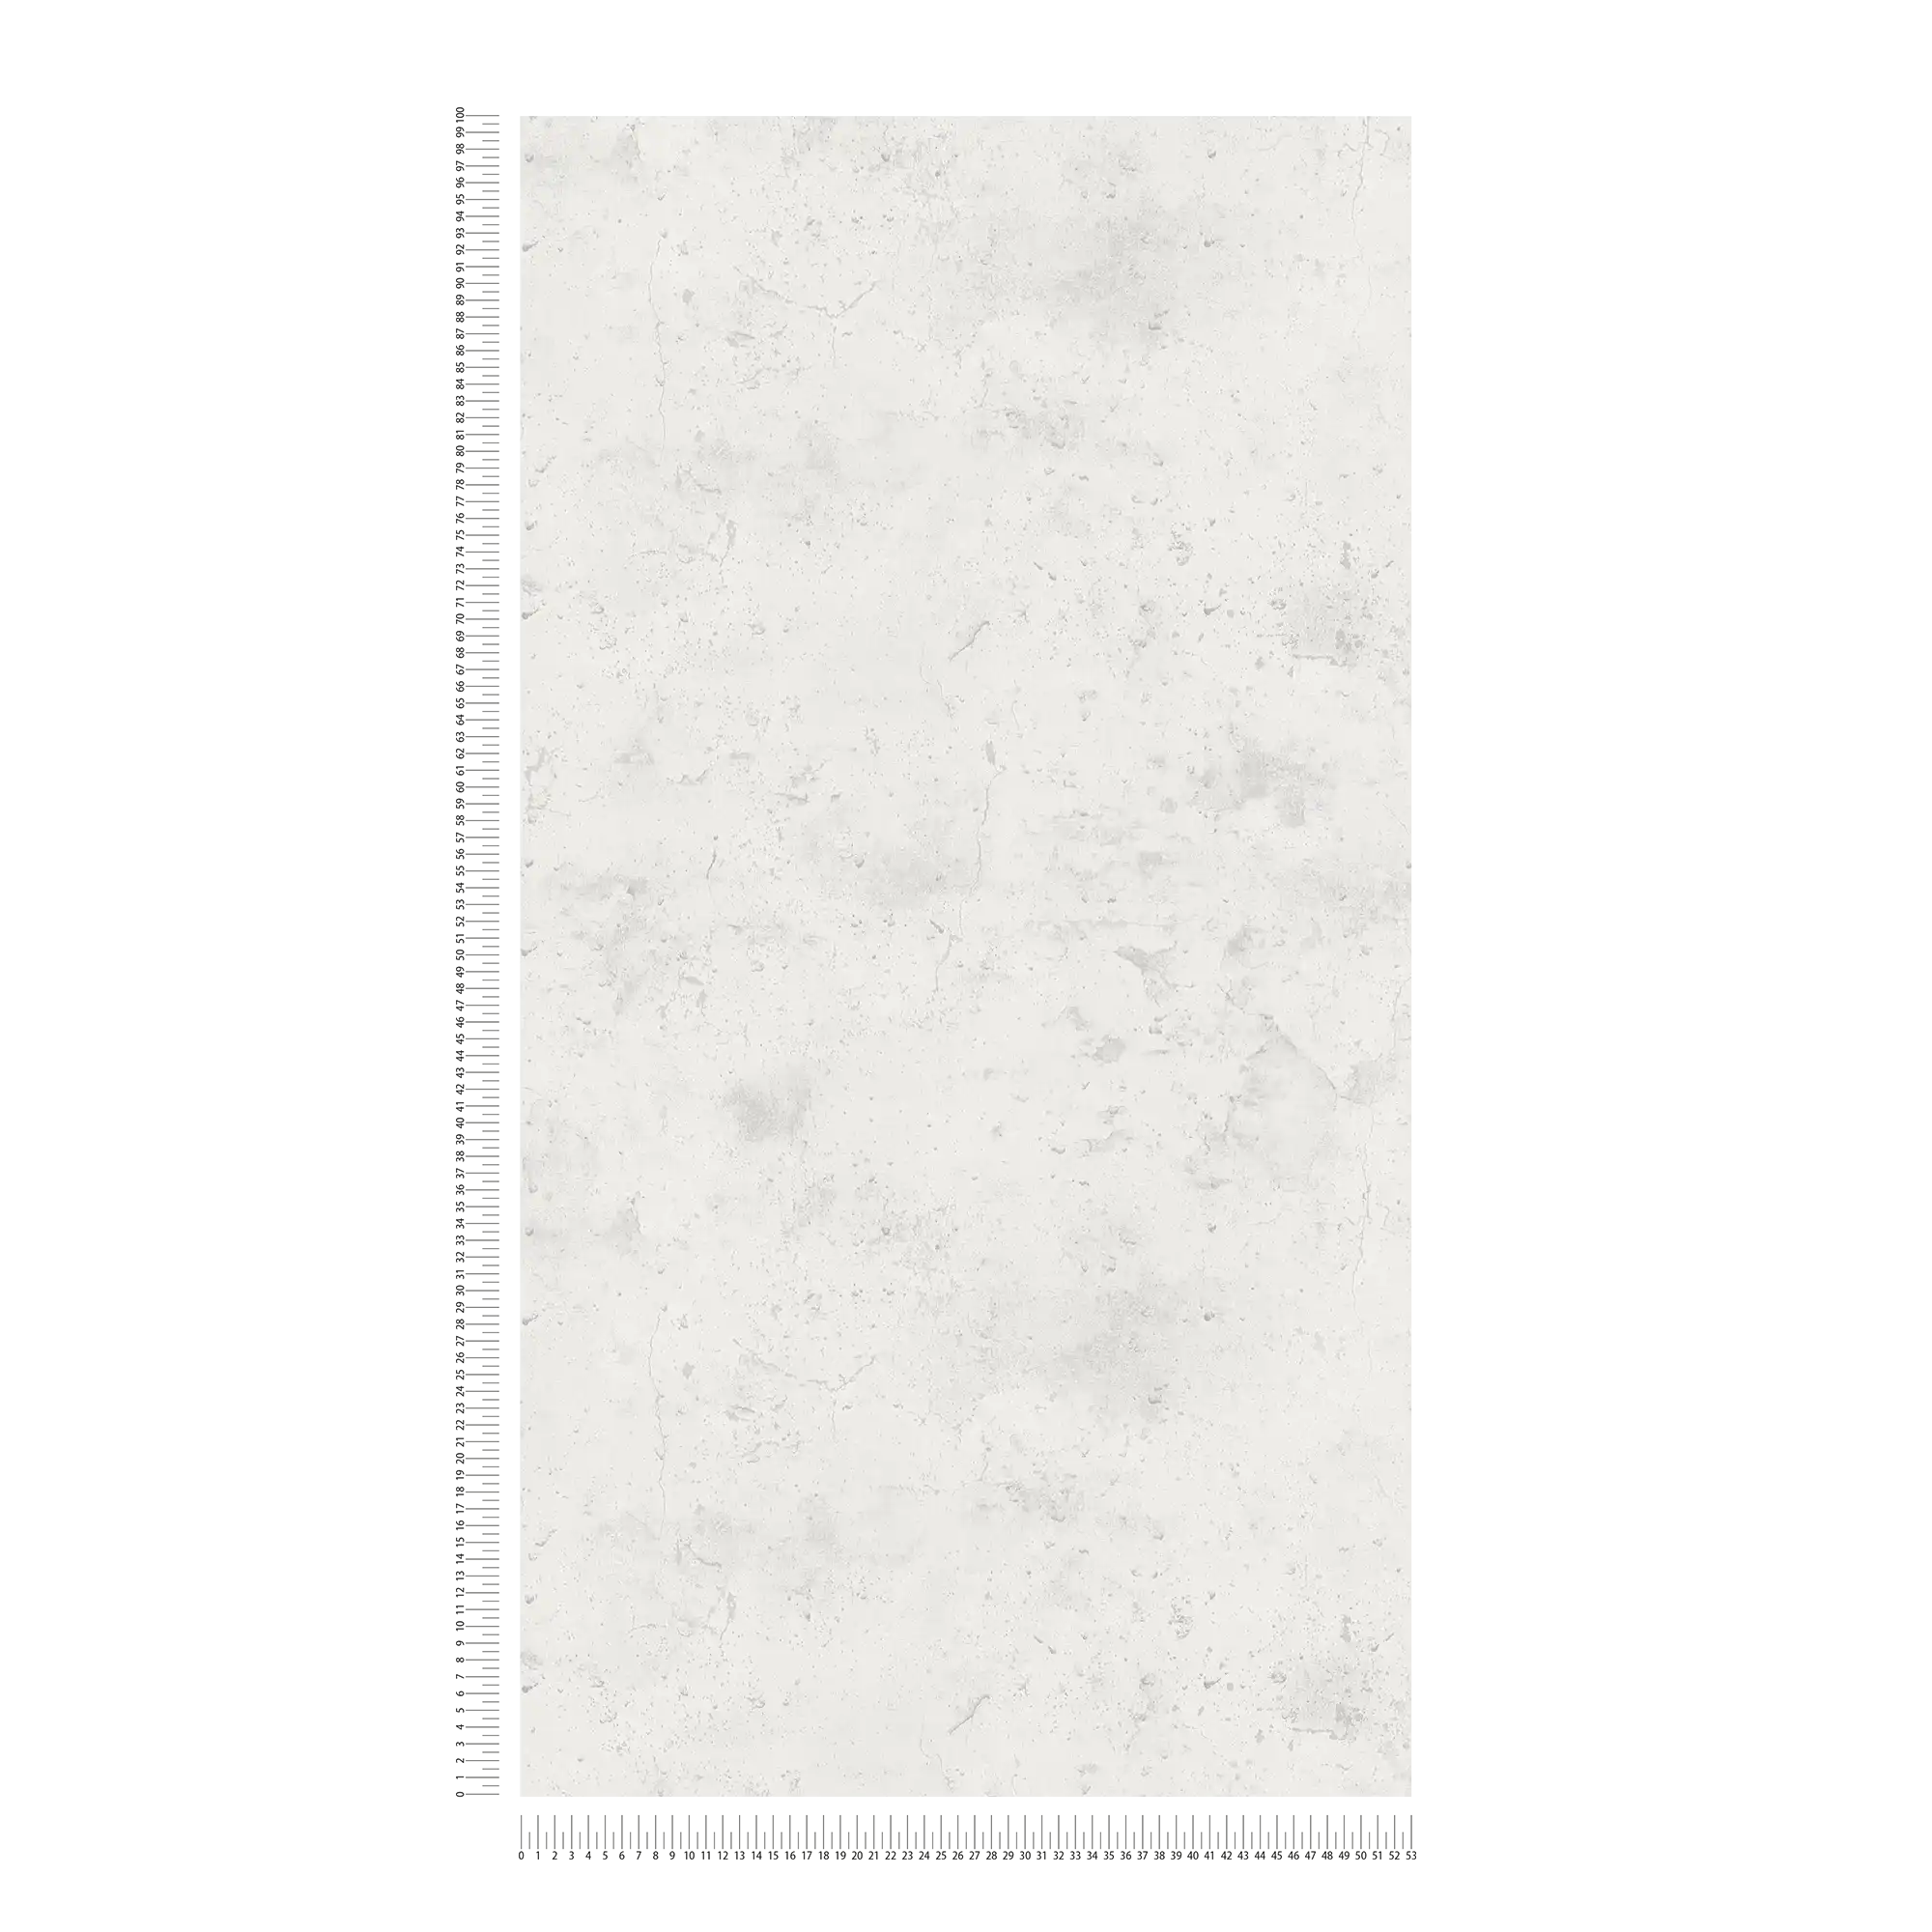             Papier peint béton style industriel - blanc-gris
        